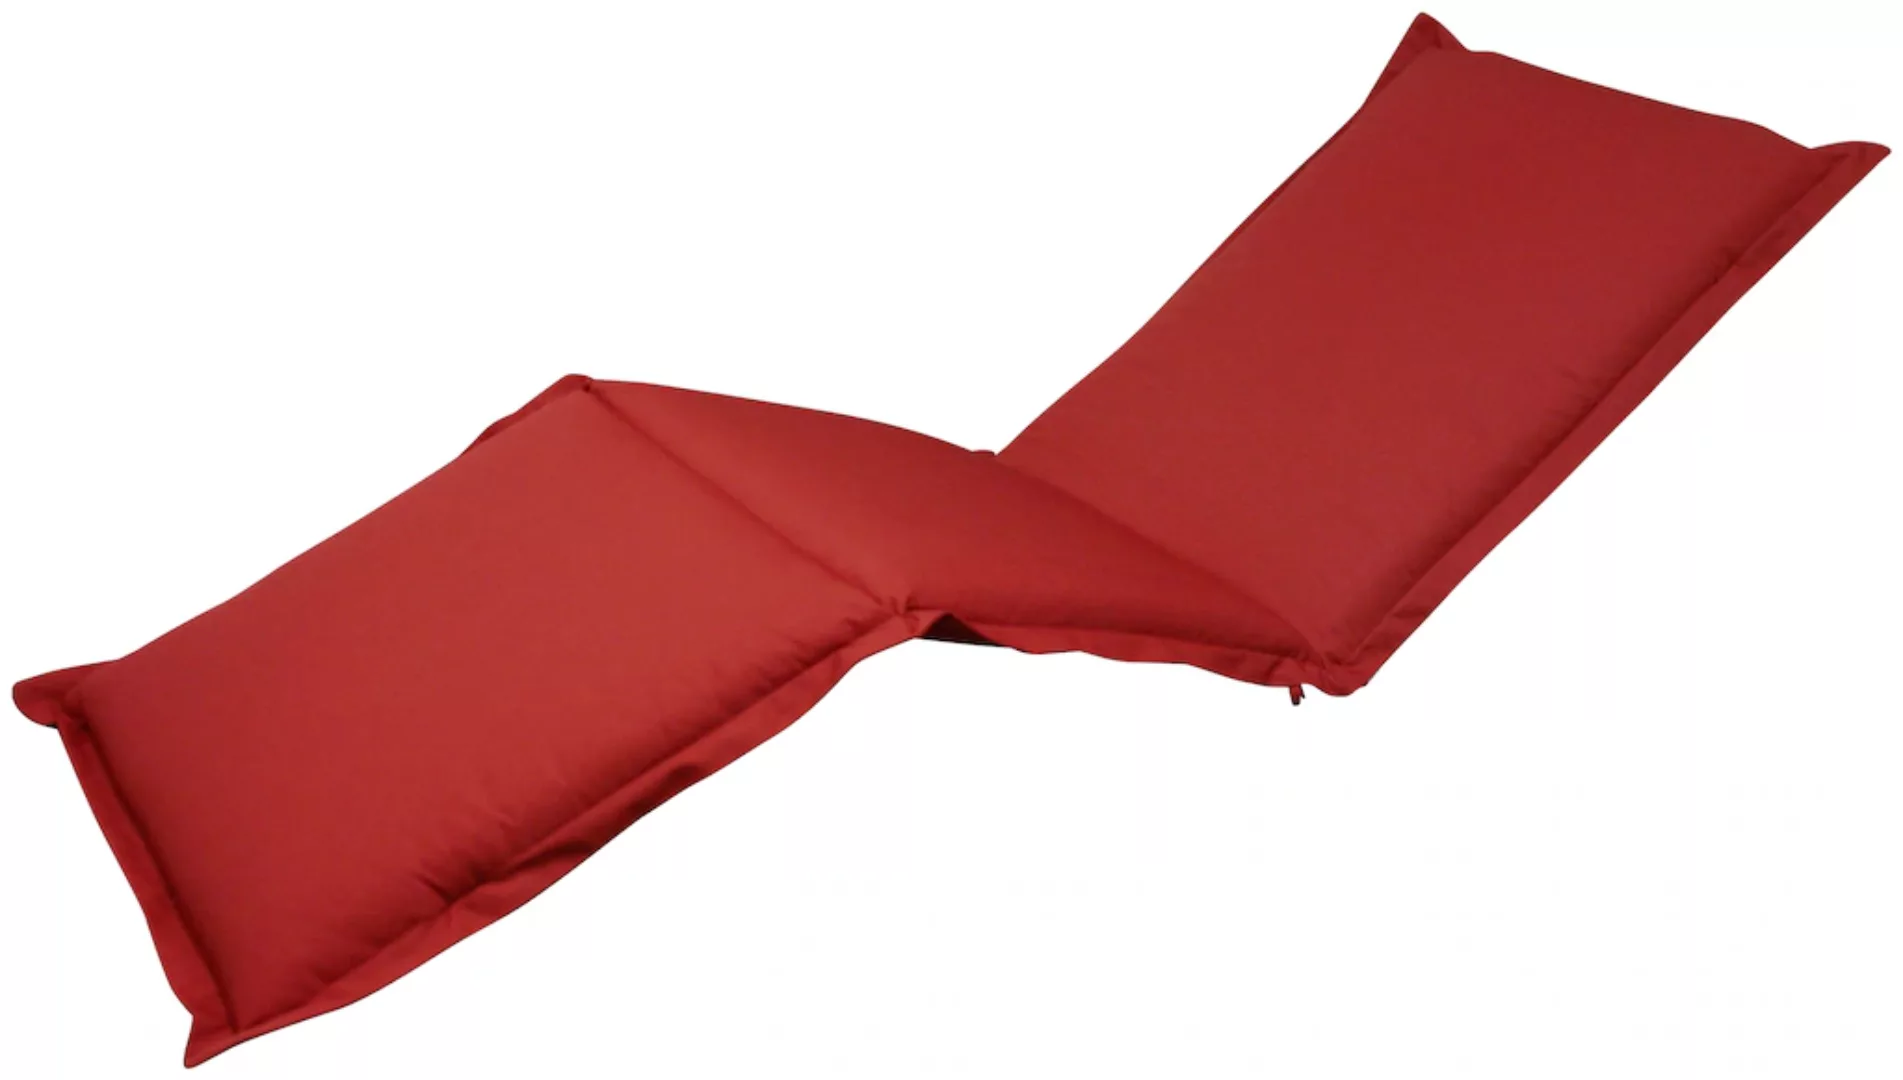 indoba® Polsterauflage Deck Chair Premium 95°C vollwaschbar Gelb 190x50 cm günstig online kaufen